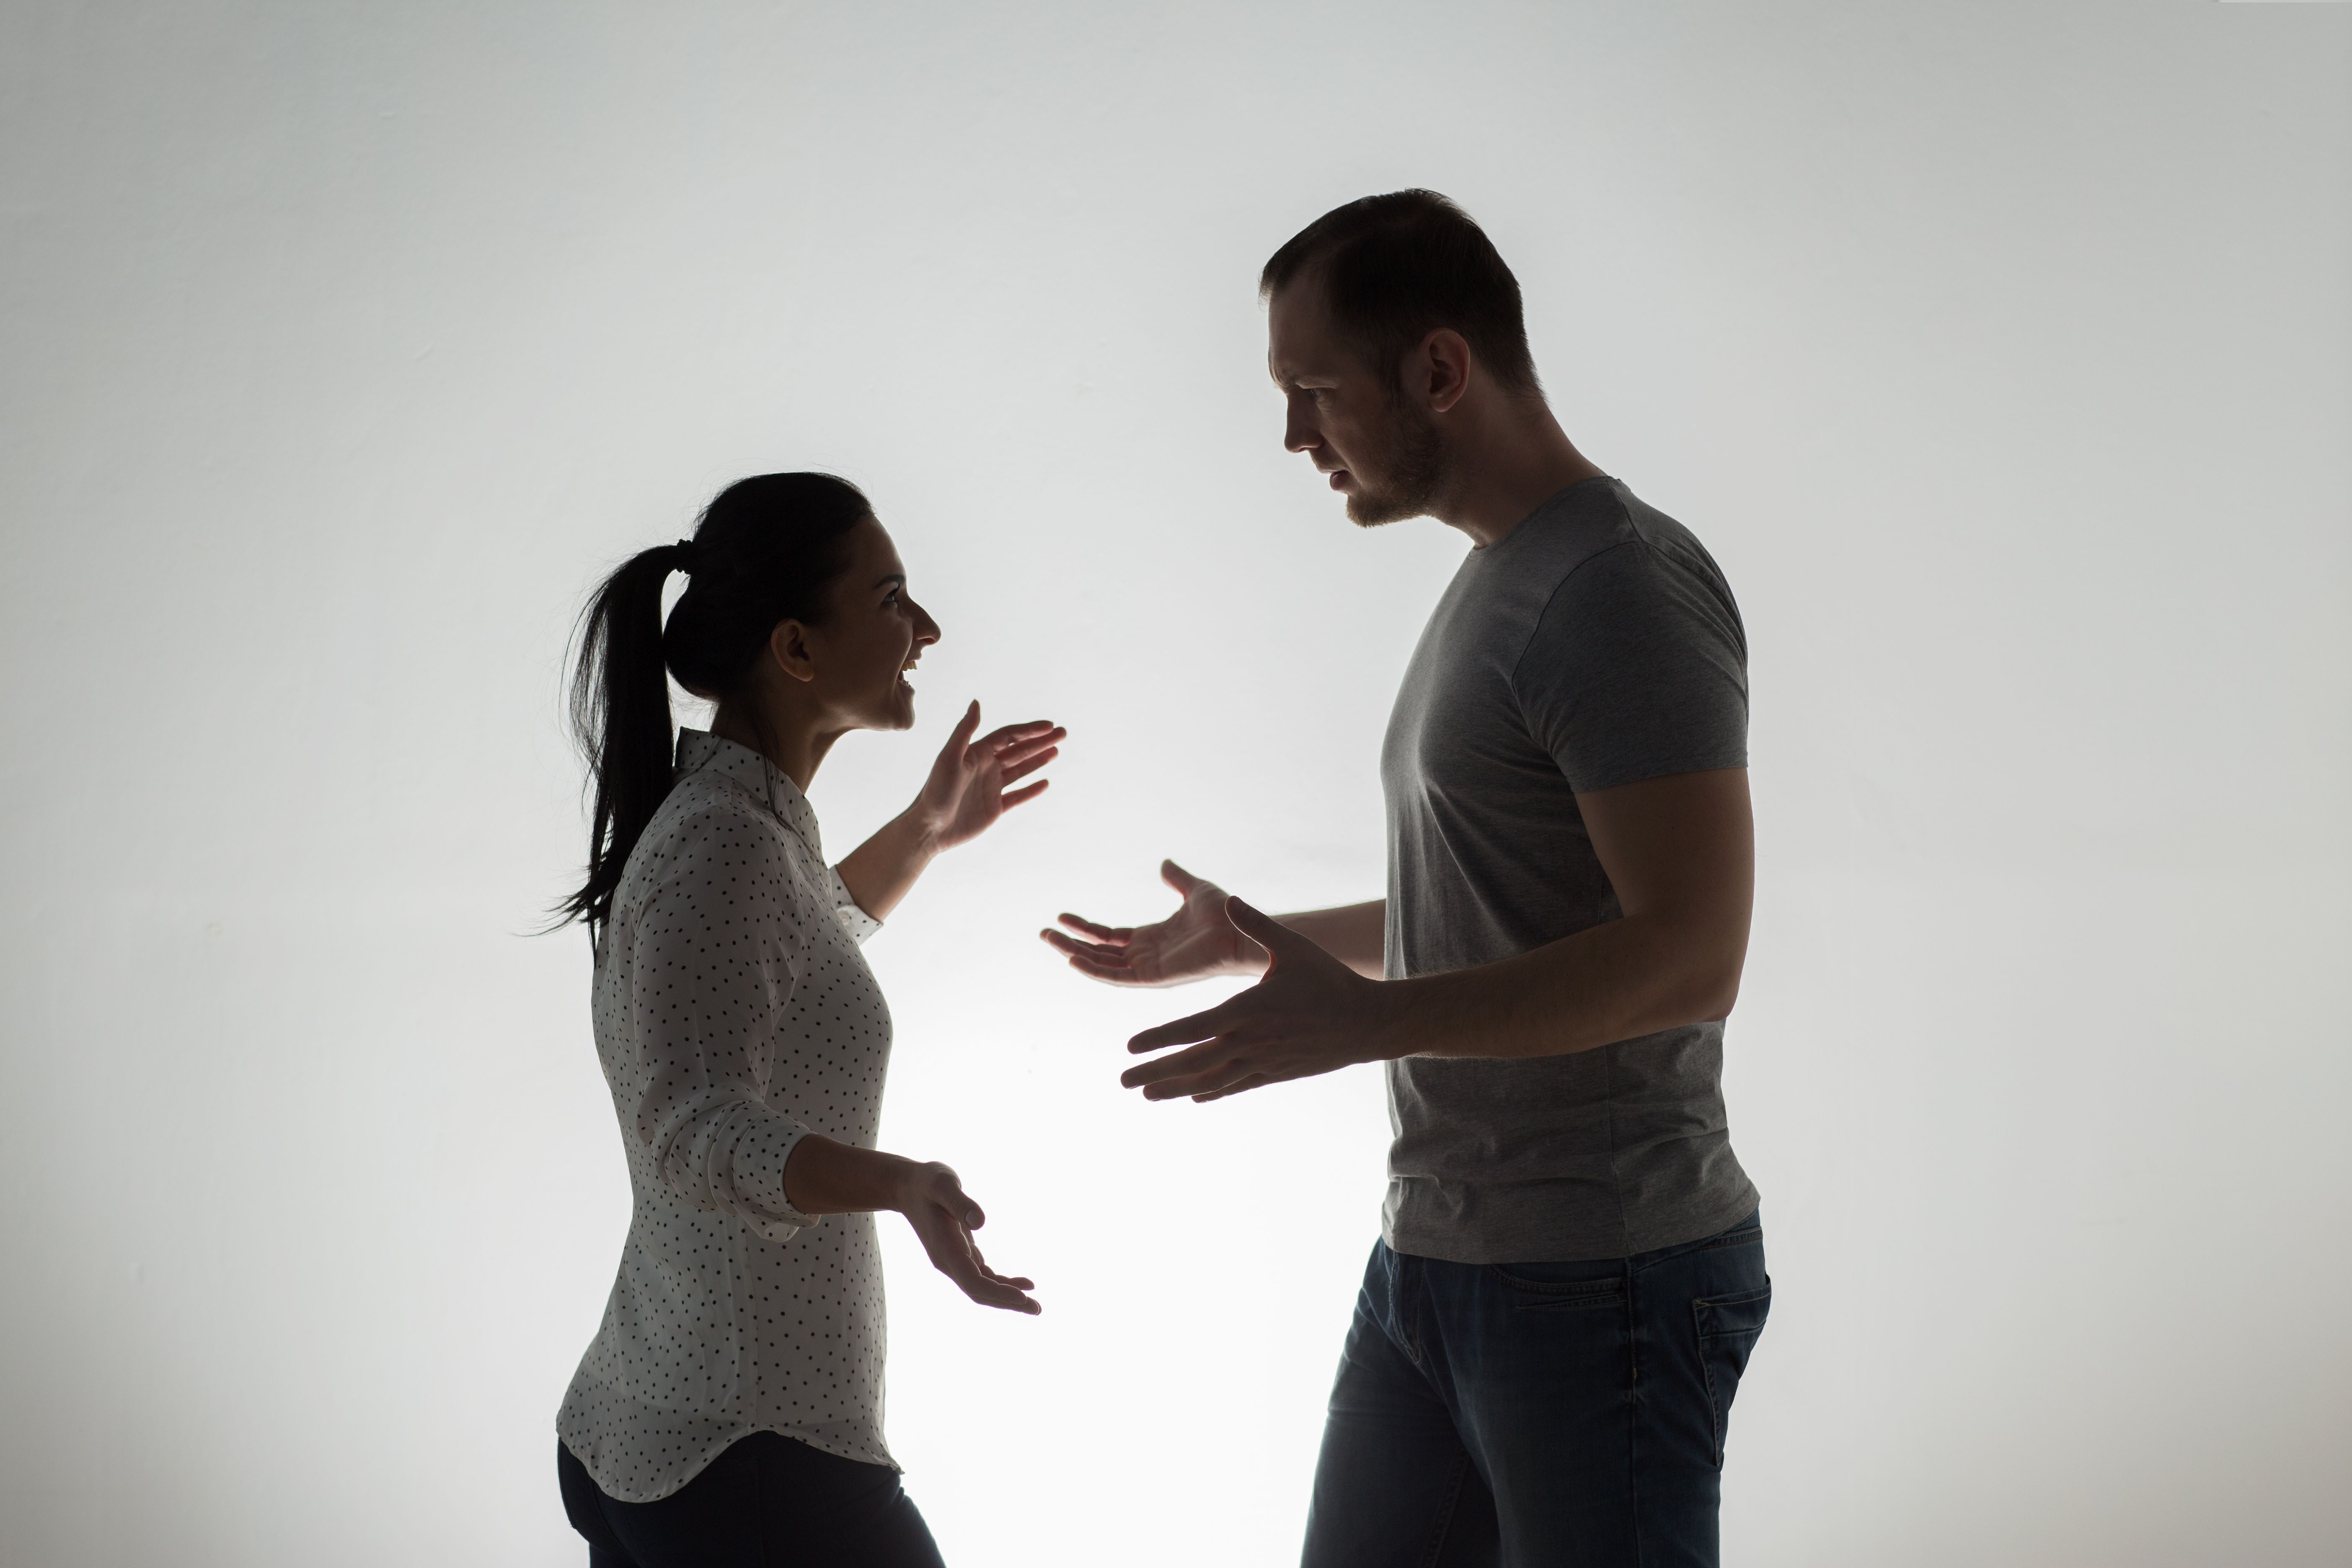 Un homme et une femme qui se disputent | Source : Shutterstock